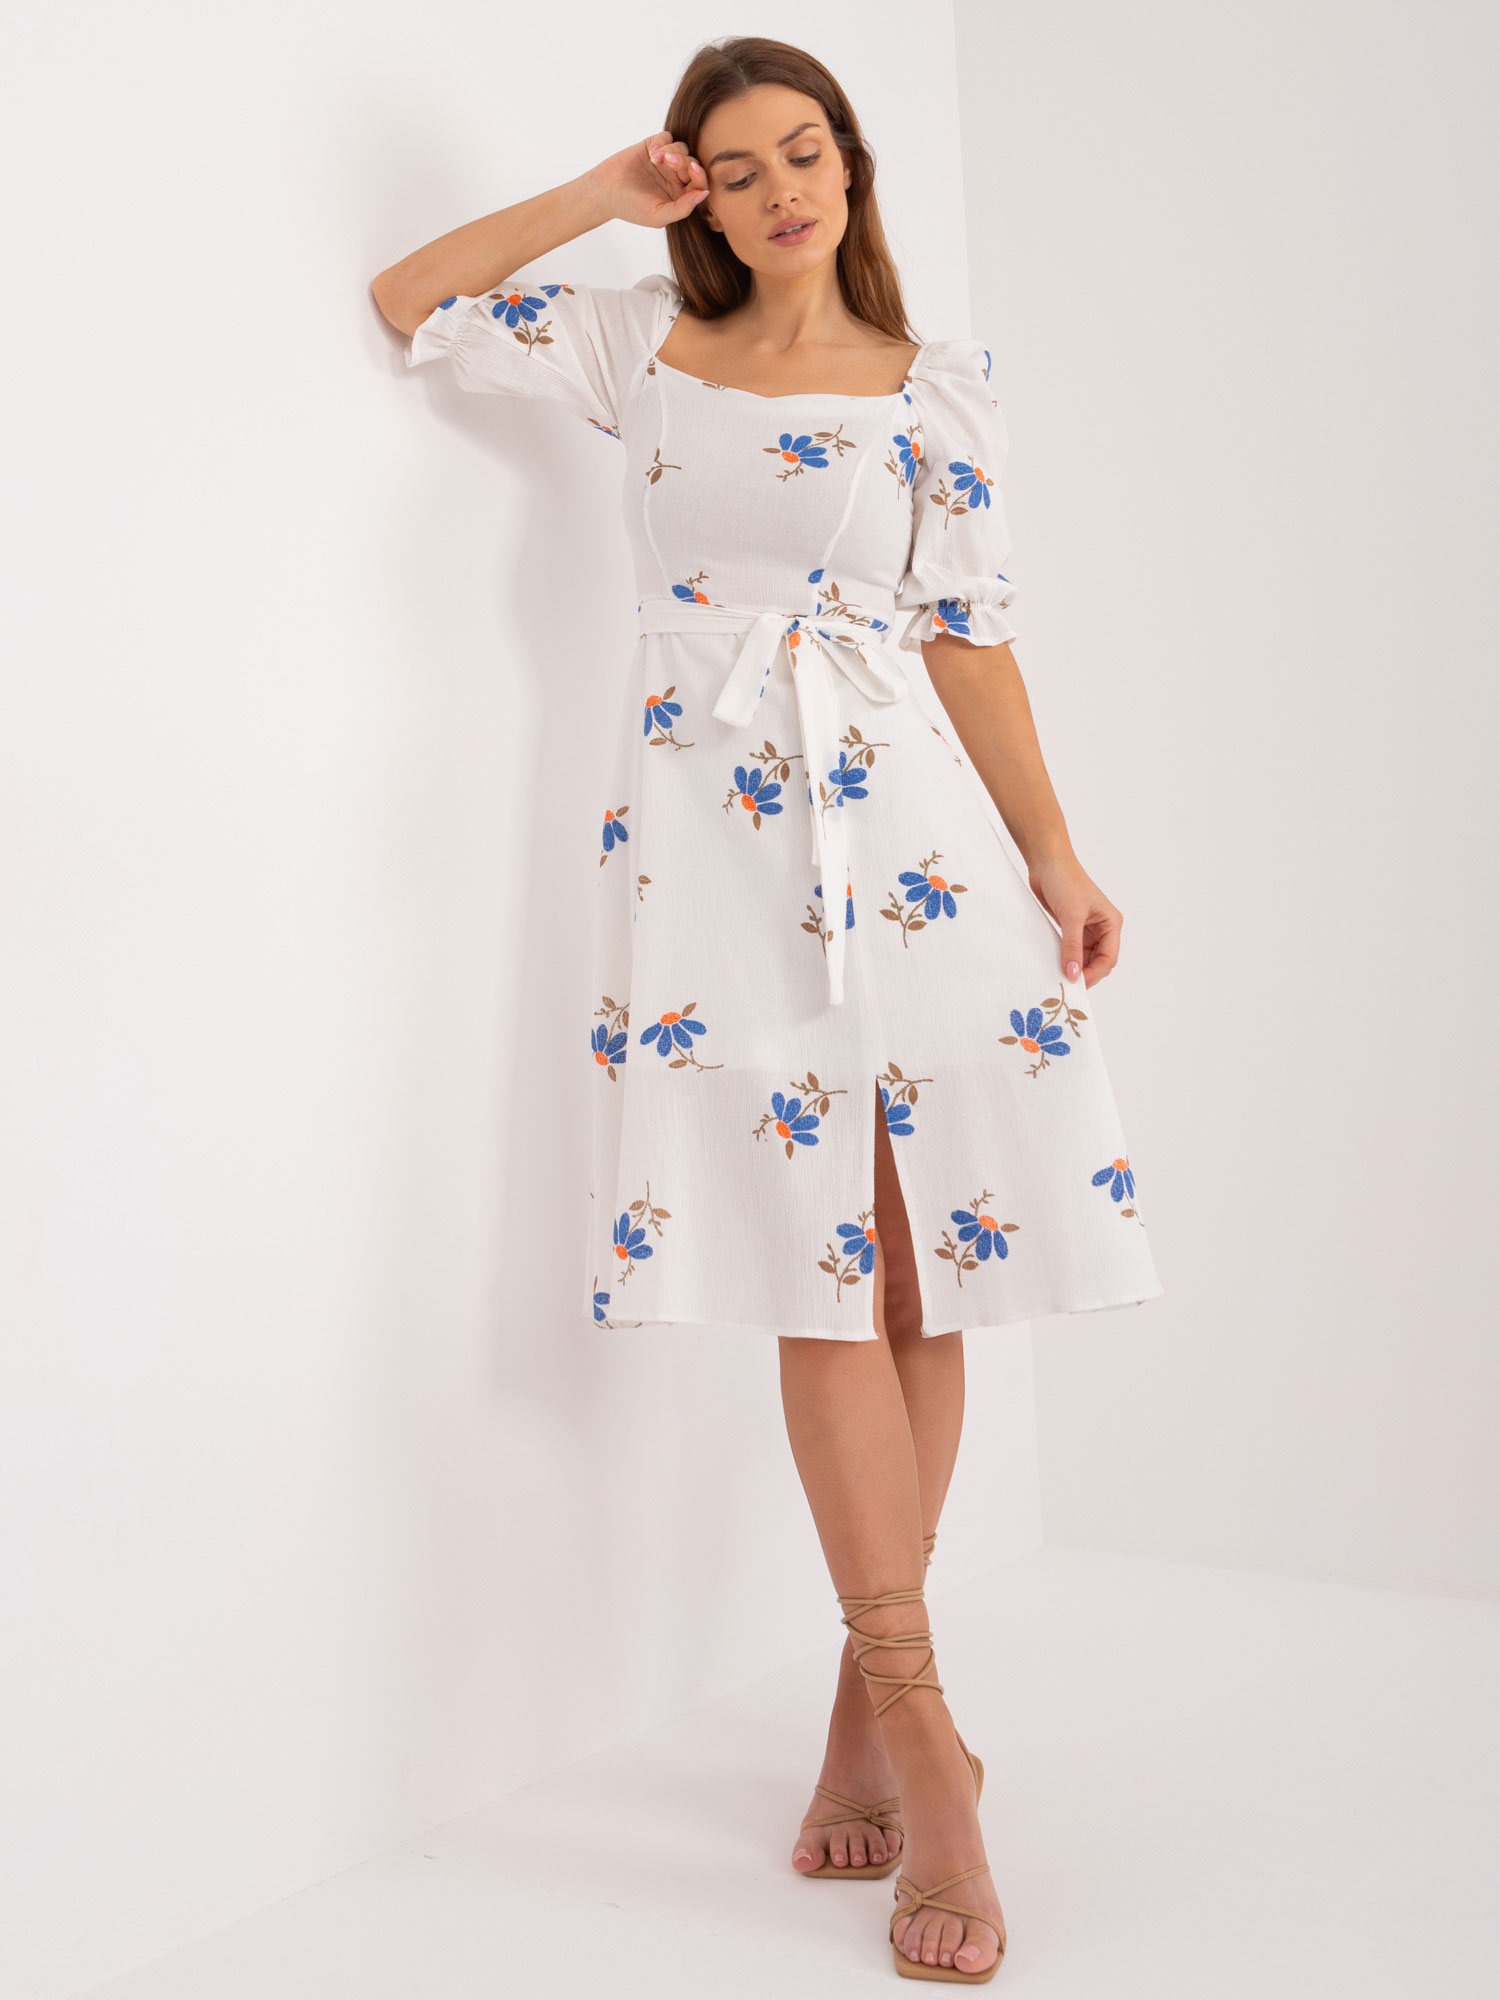 Bílé šaty s modrými květinami -LK-SK-508964-3.95-white-blue Velikost: 40